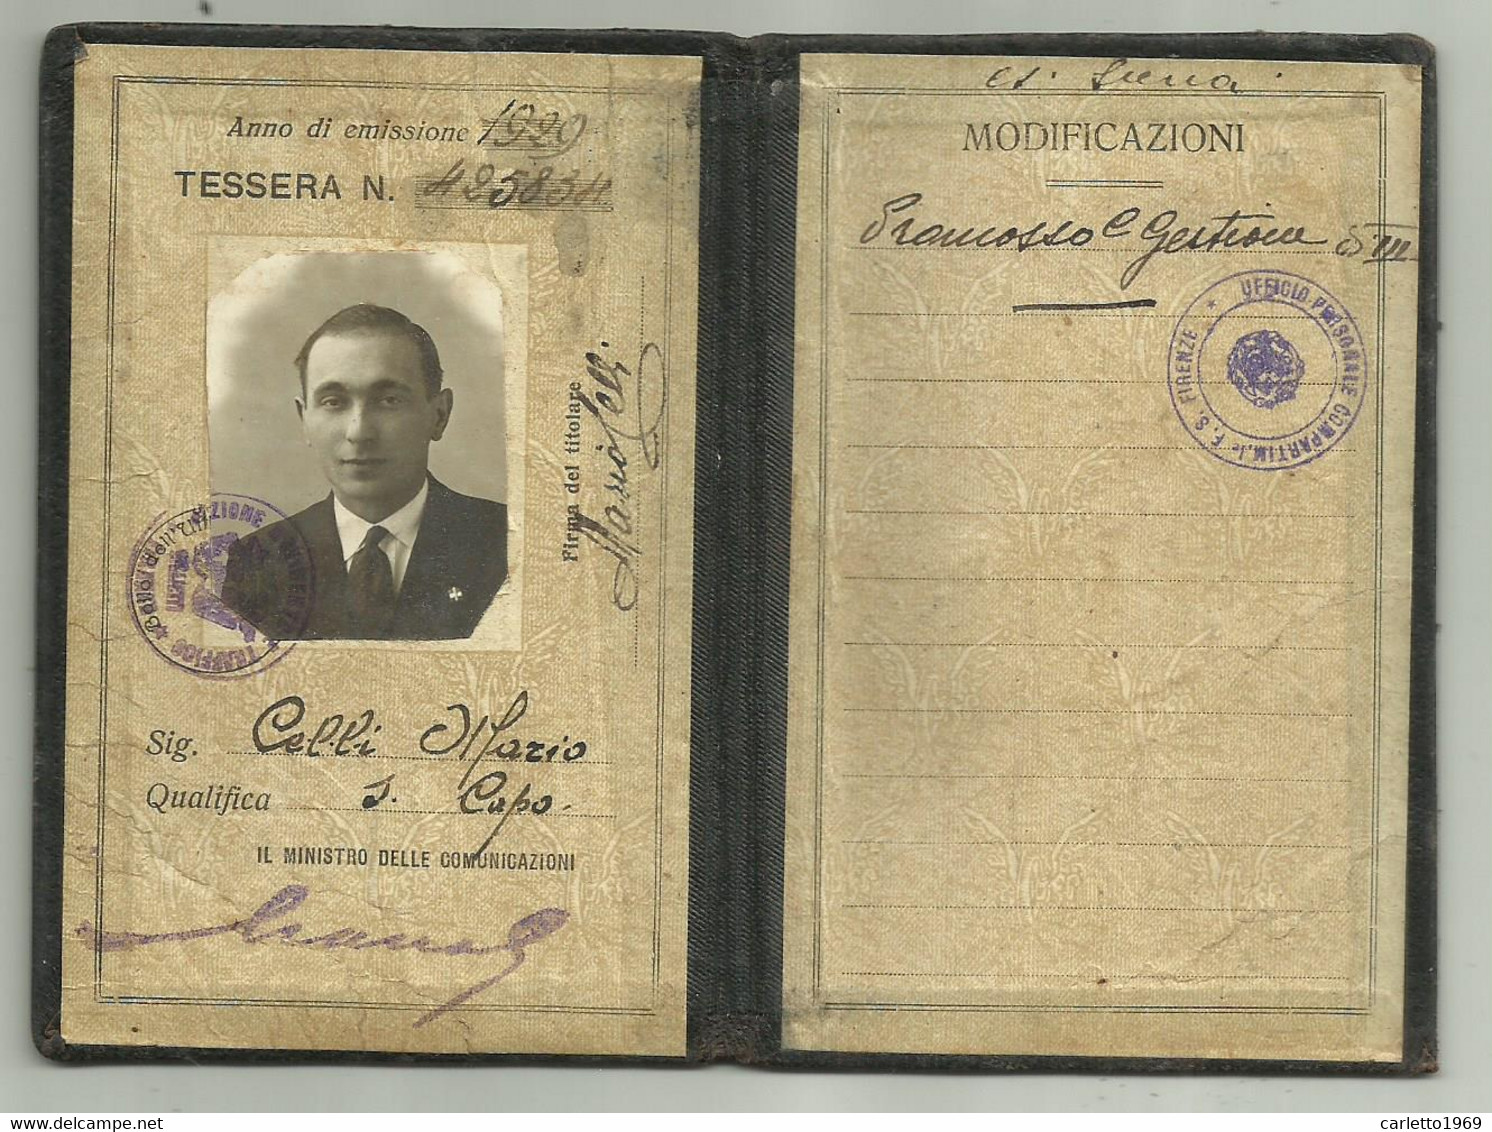 FERROVIE  DELLO STATO TESSERA DI RICONOSCIMENTO  EMISSIONE 1929 - Historical Documents